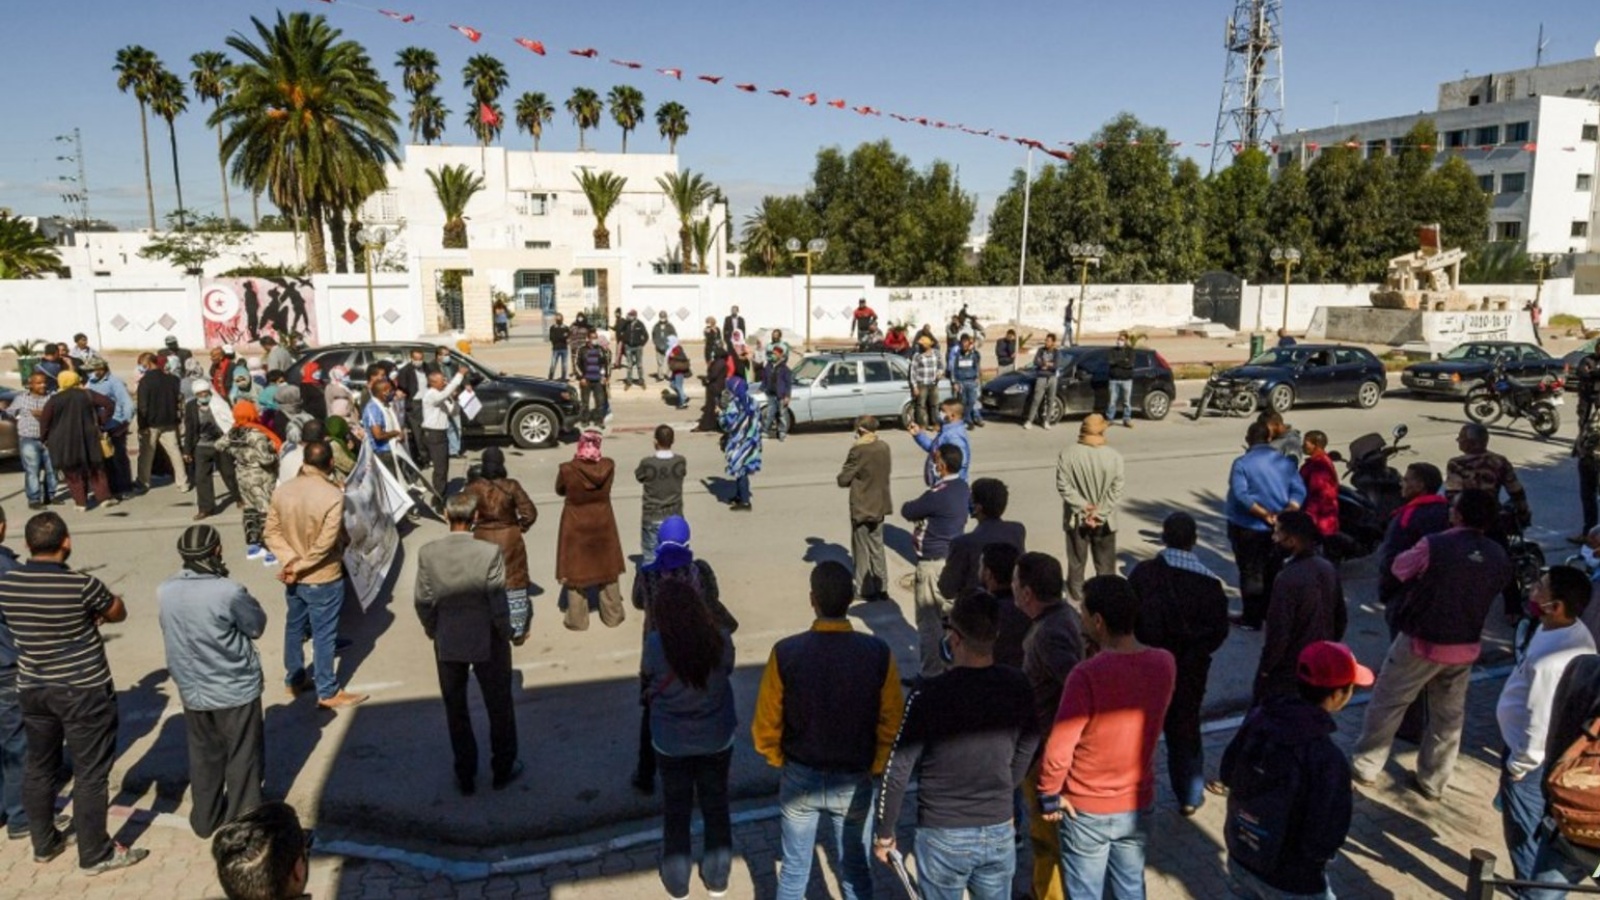 الحادثة تعيد إلى الأذهان إقدام محمد البوعزيزي على إضرام النار في نفسه في 2010 ليلقى حتفه ويشعل الثورة التونسية